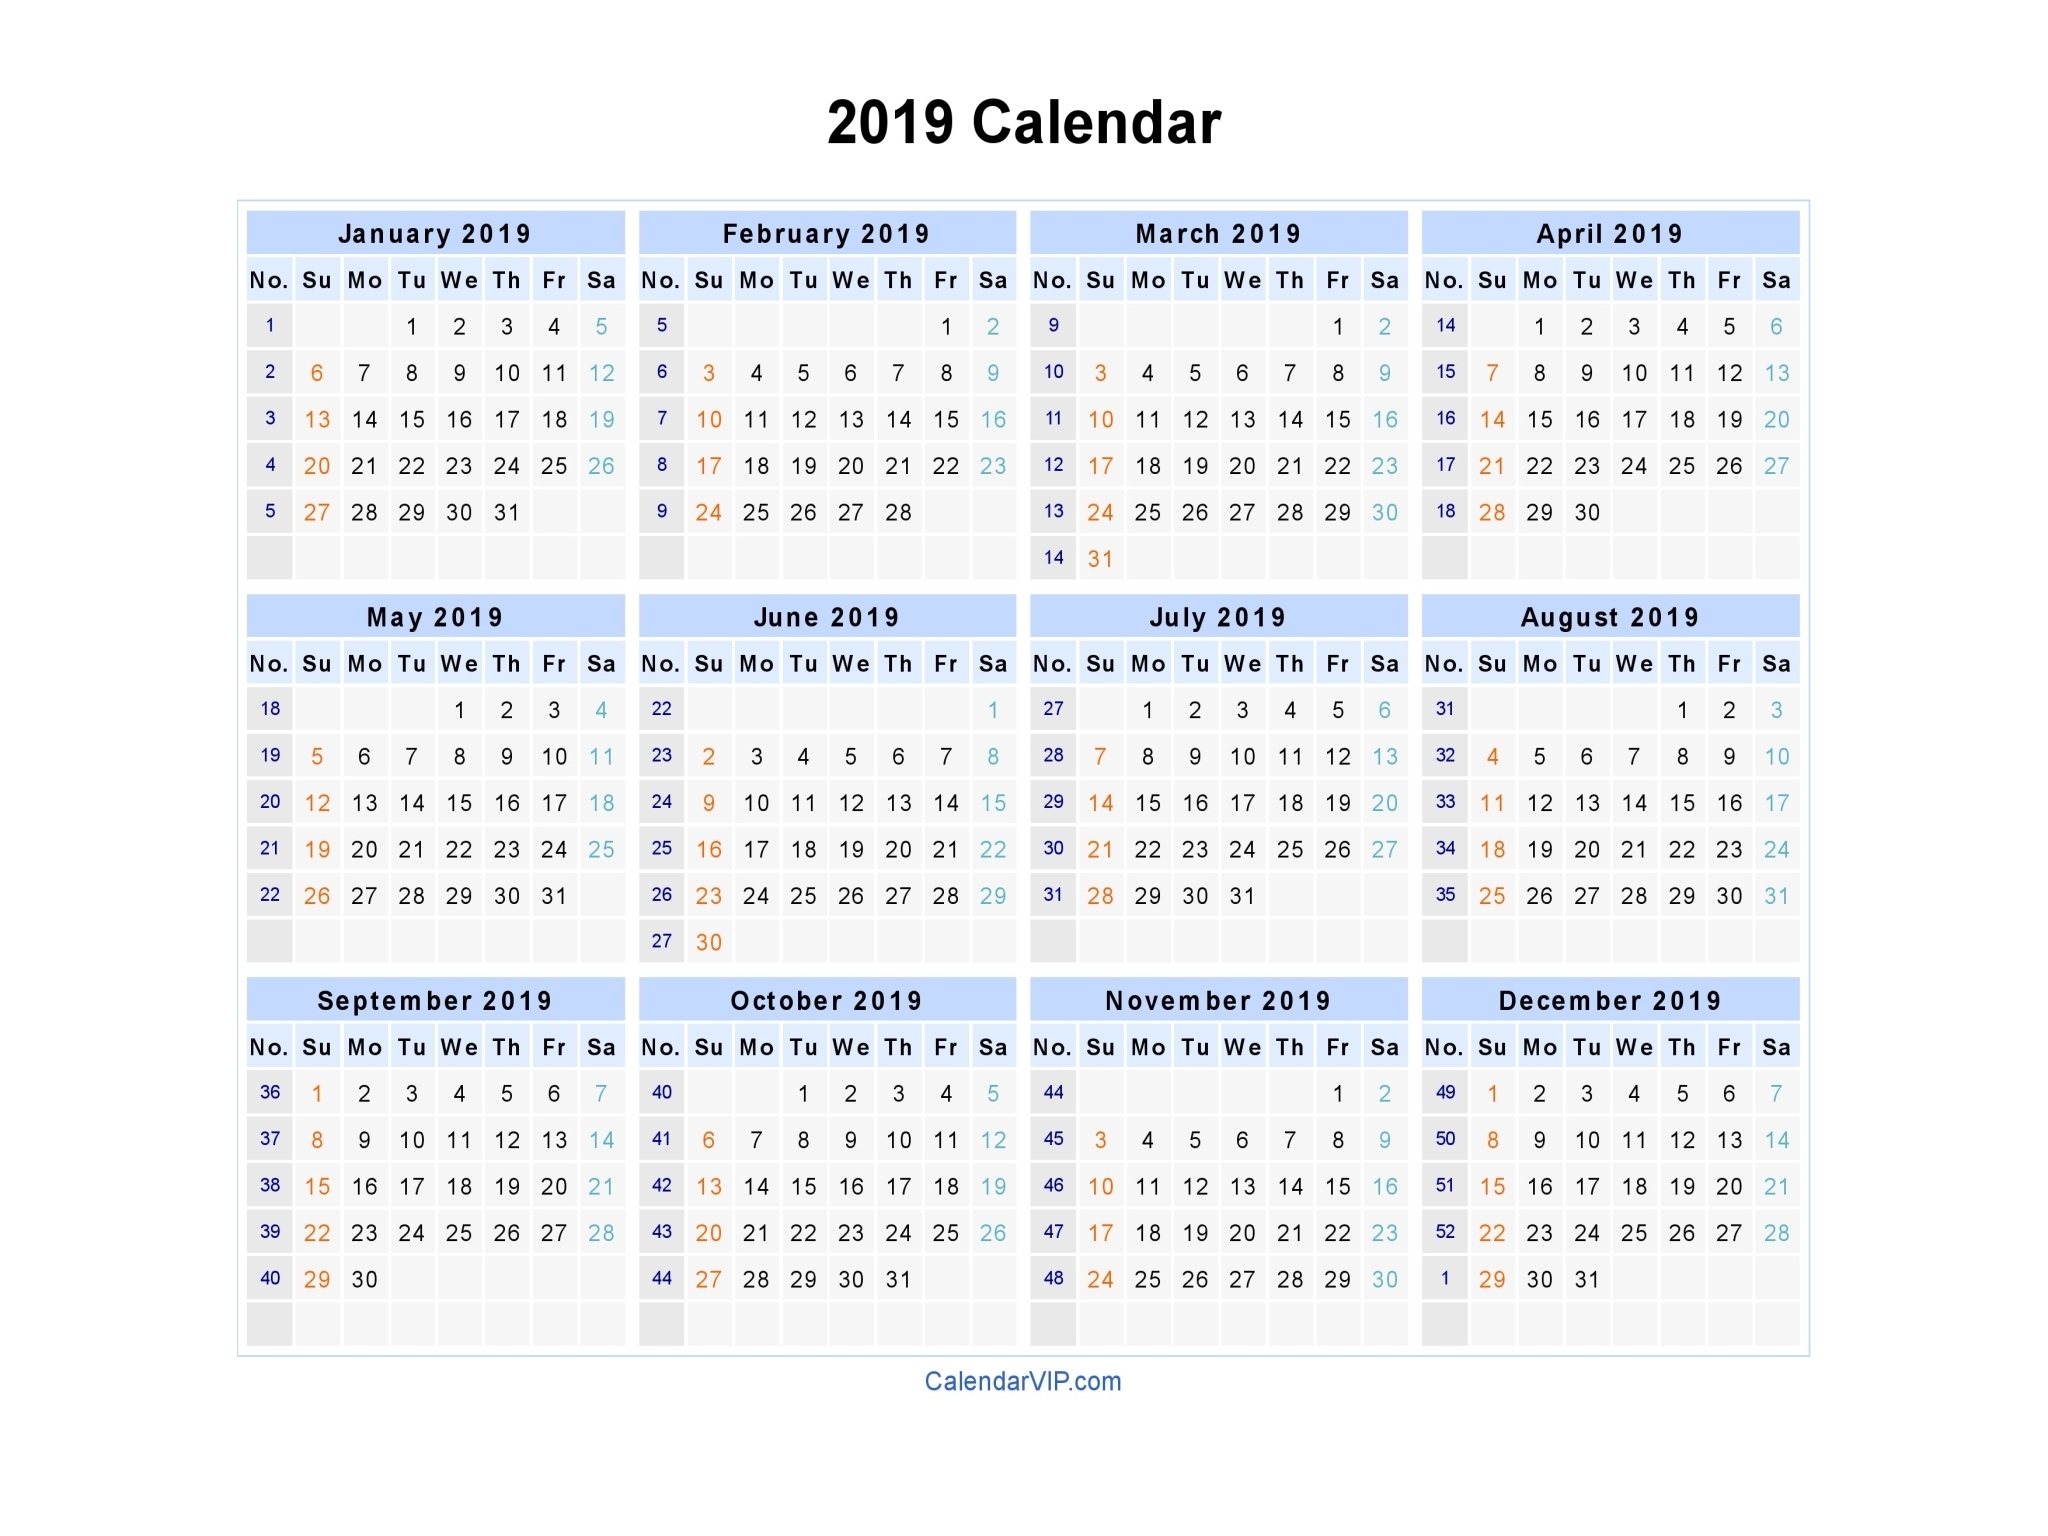 2019 Calendar - Blank Printable Calendar Template In Pdf 2020 Calendar Template With Week Numbers